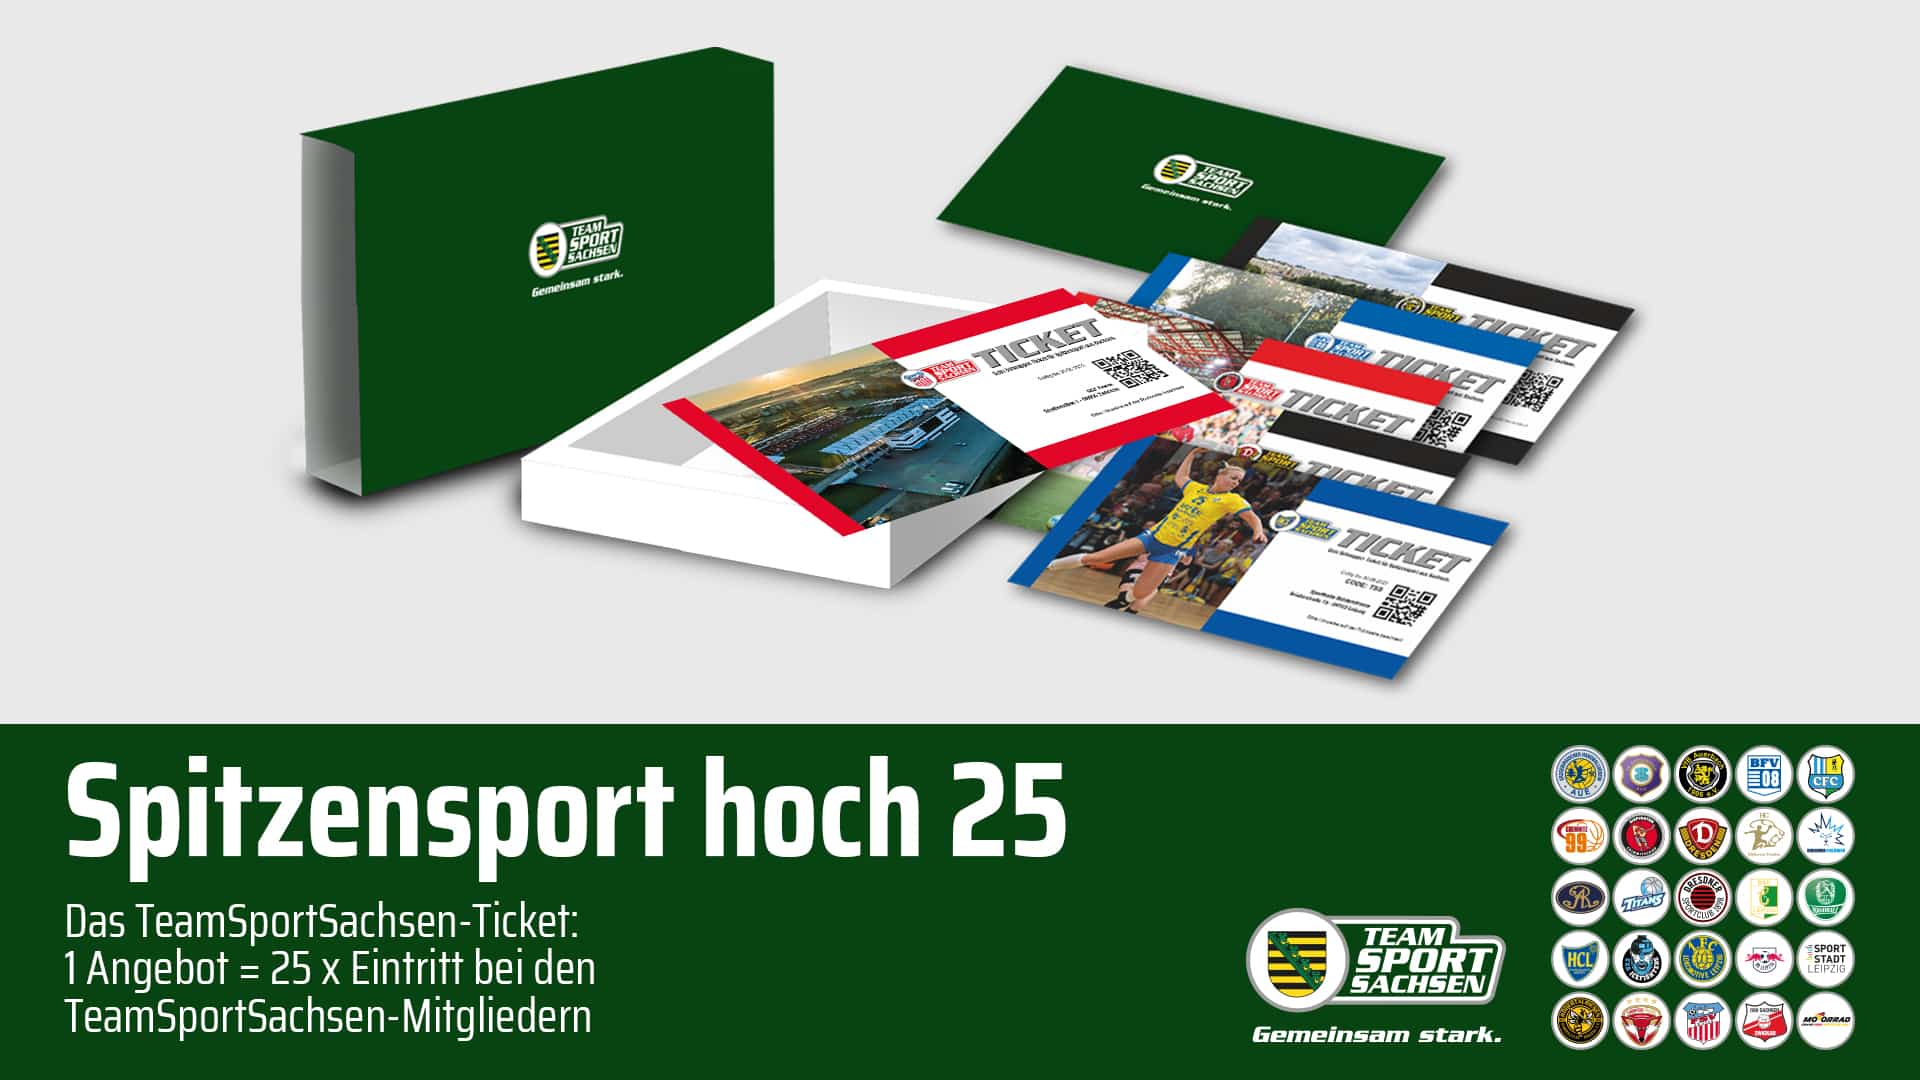 TeamSportSachsen-Ticket: Sportliche Reise durch Sachsen für 99 Euro